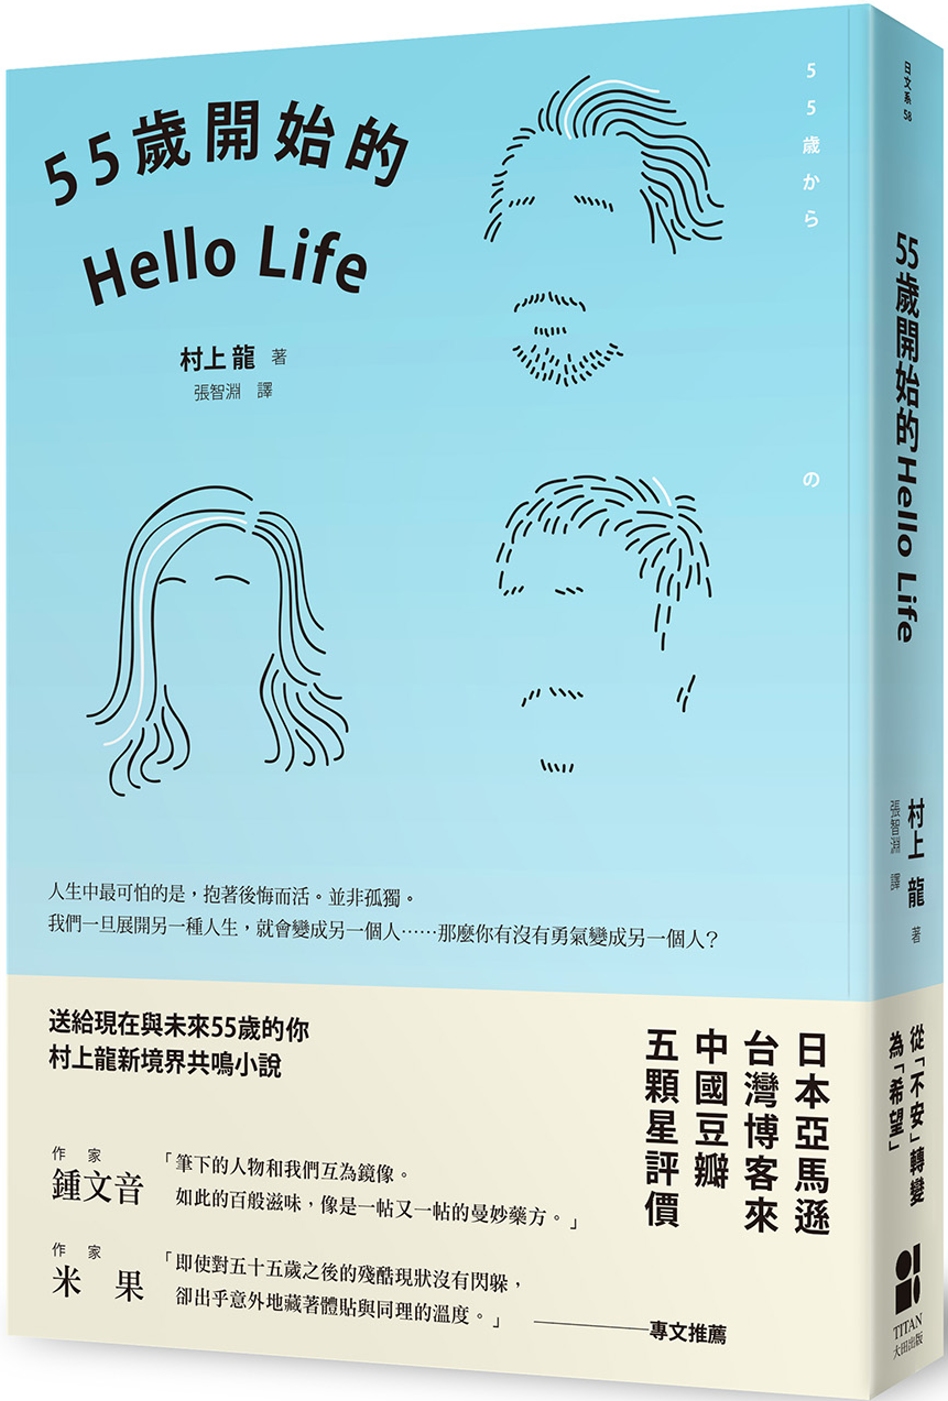 55歲開始的Hello Life（東京晴空版）